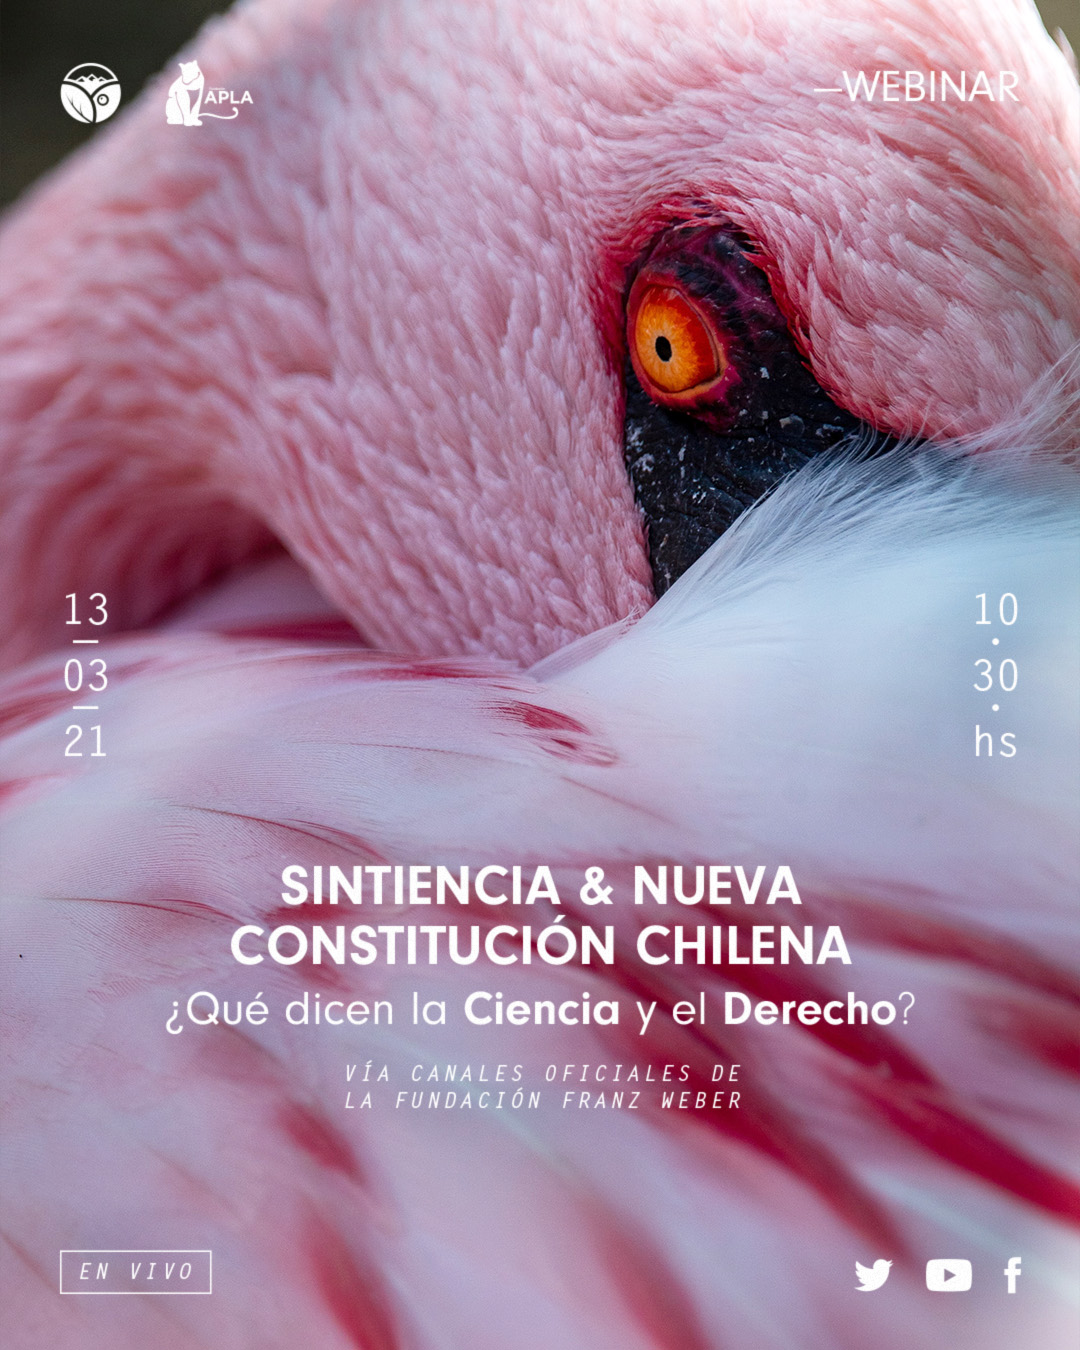 "Sintiencia y Nueva Constitución Chilena" ¿Qué dice la ciencia y el derecho?